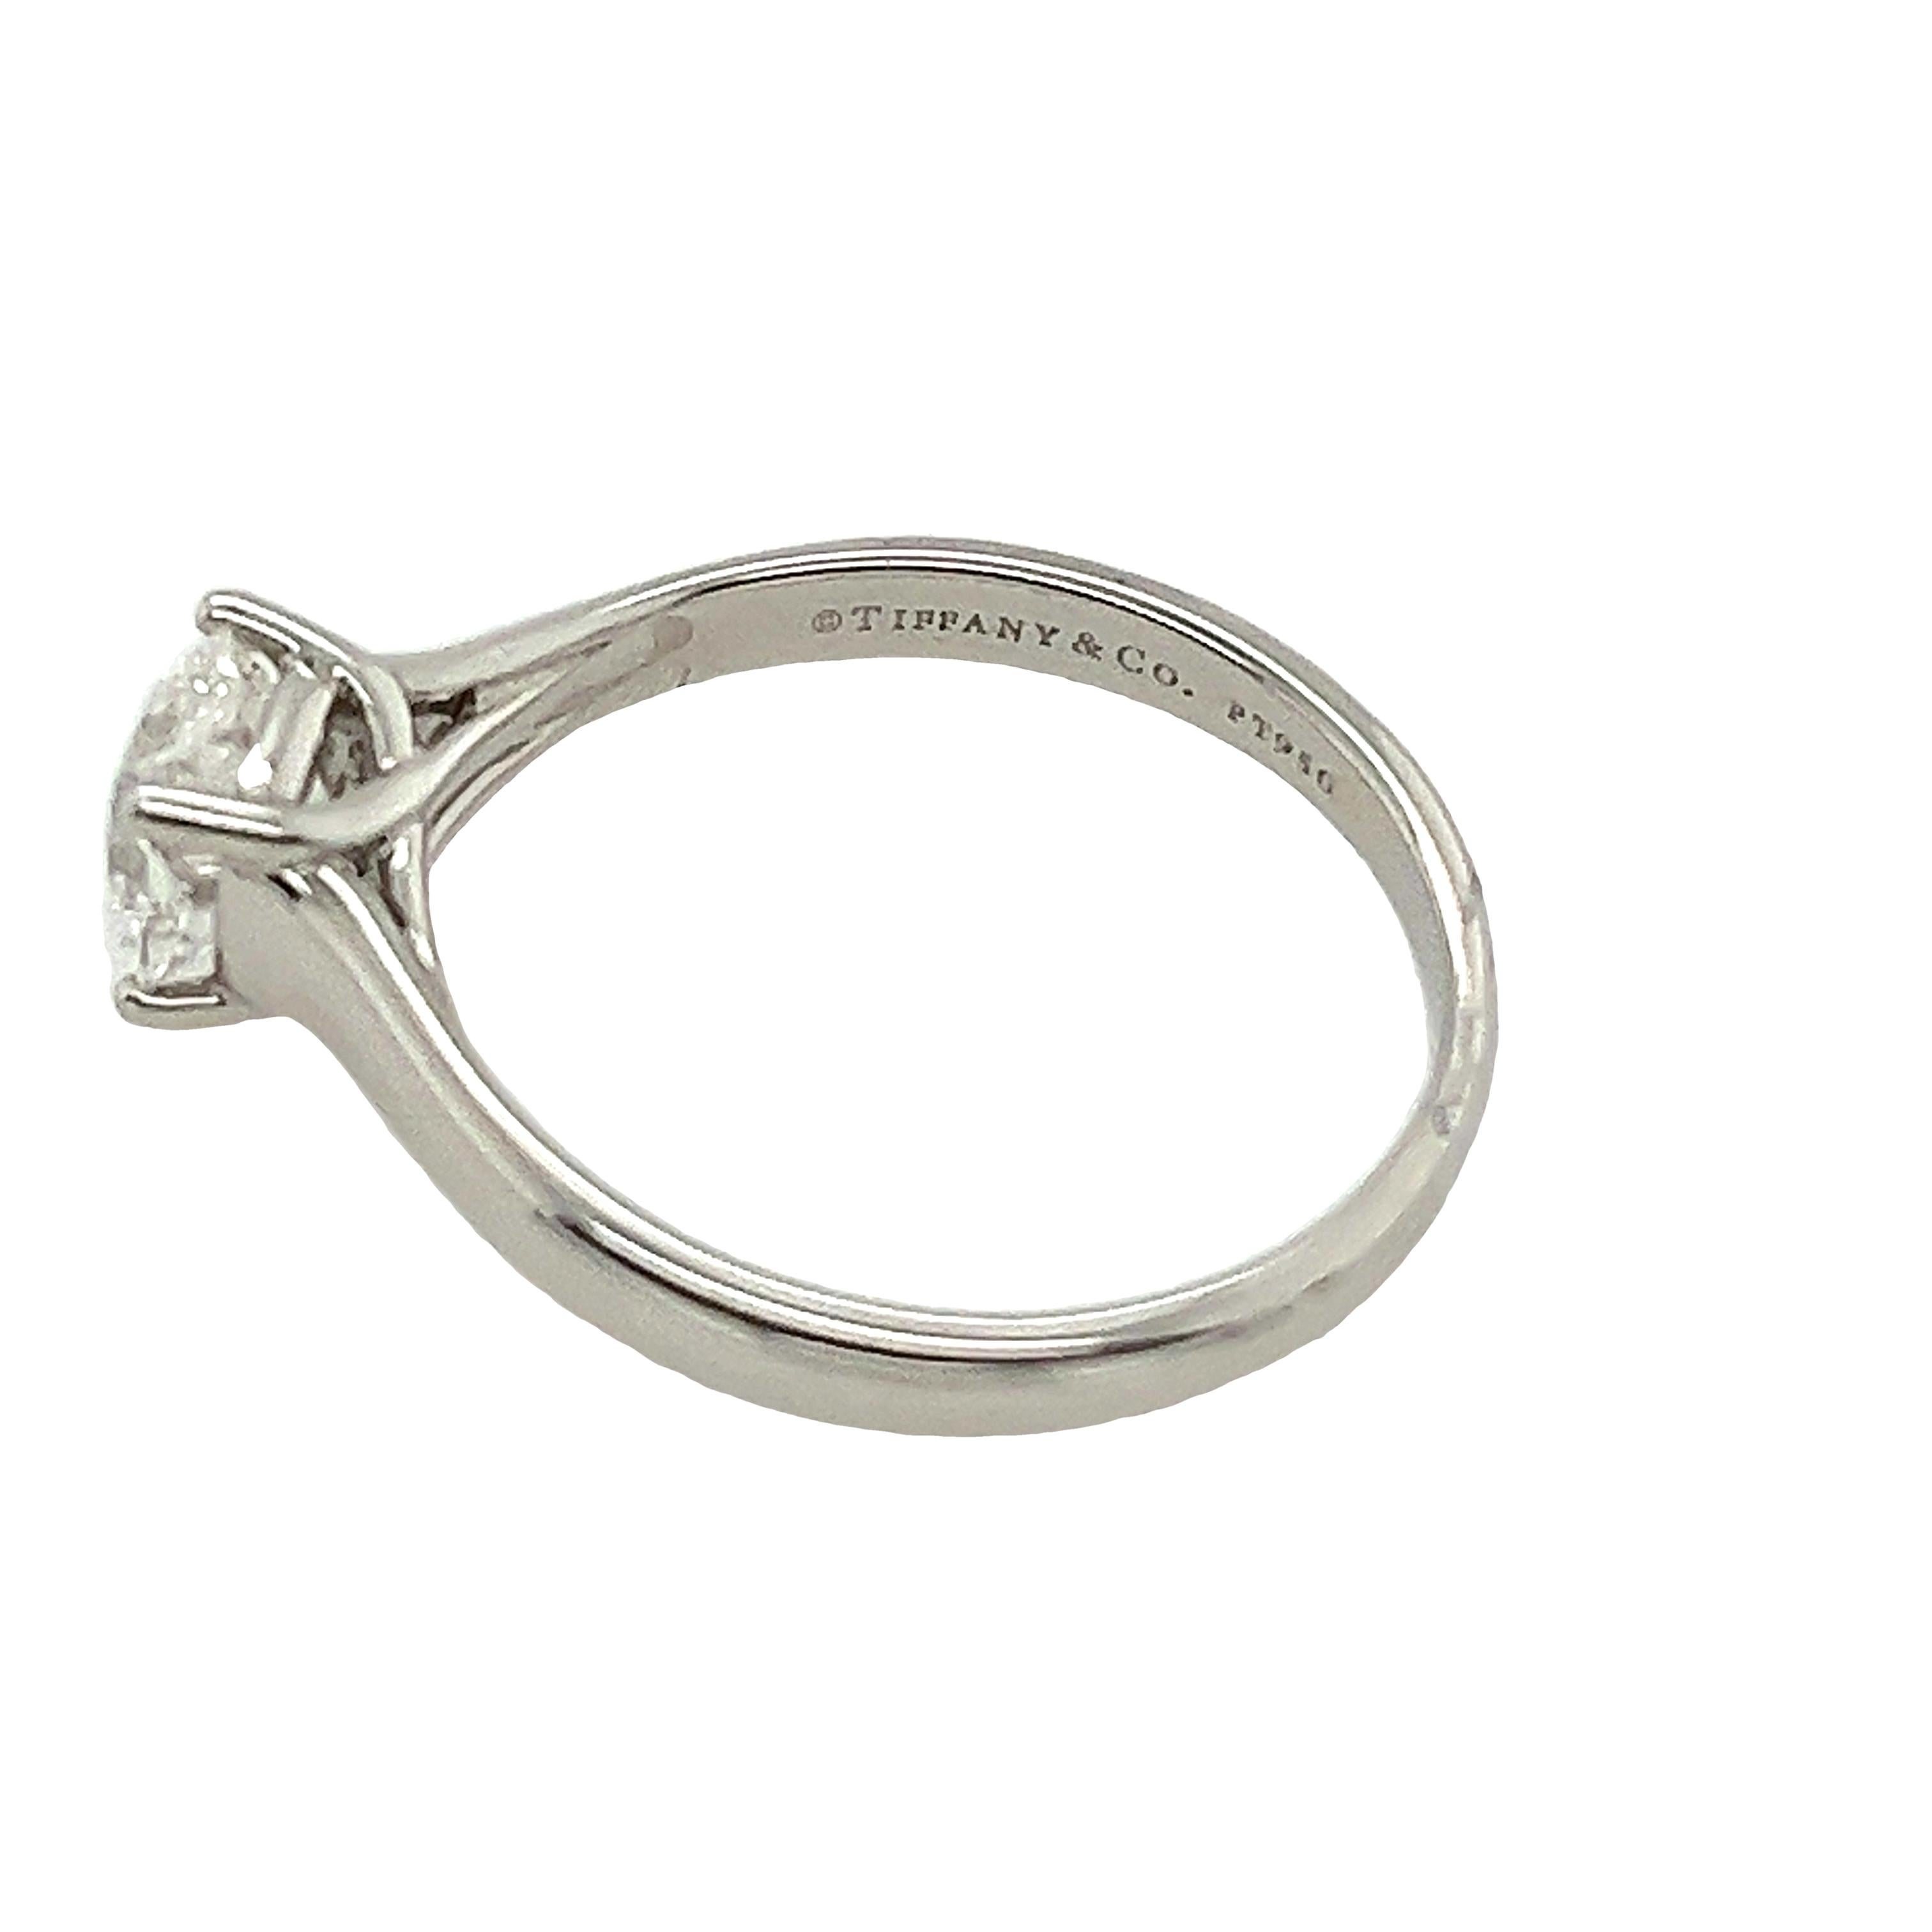 Sehen Sie den Gipfel der Eleganz: die Tiffany & Co. Solitär-Ring aus Platin. Mit einem prächtigen quadratischen Diamanten im Lucida-Schliff von 0,87 Karat F/VS2 strahlt dieses Meisterwerk zeitlose Raffinesse aus. Sein klassisches, in Platin